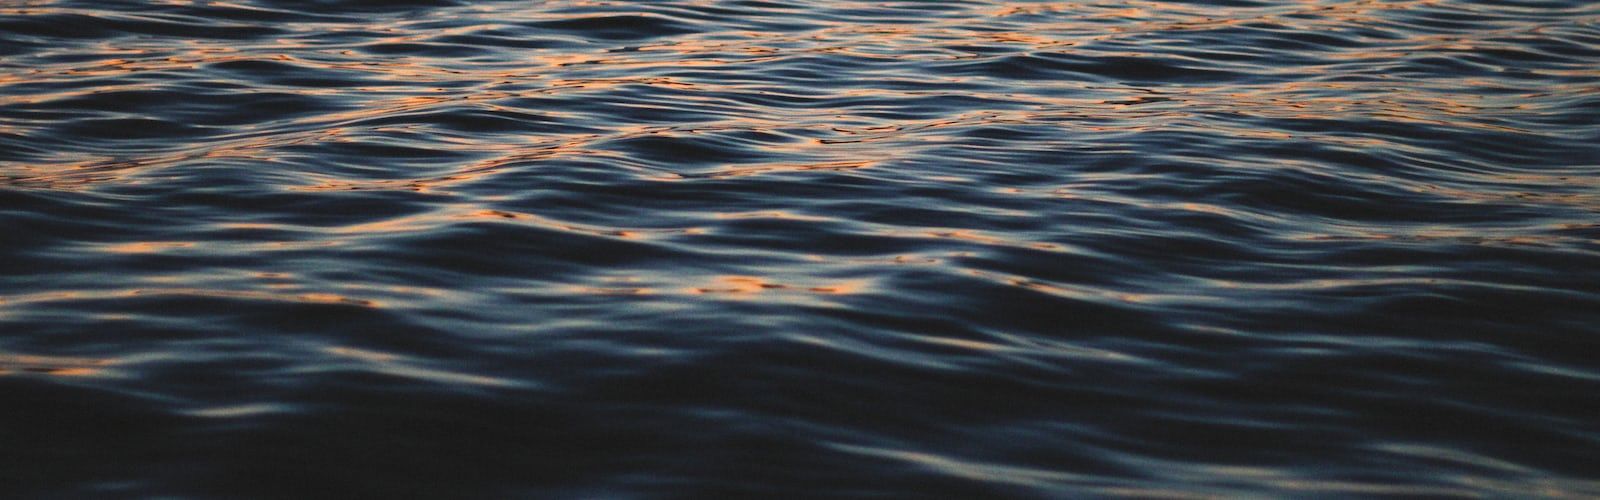 A close up of rippling water at sunset - Lake